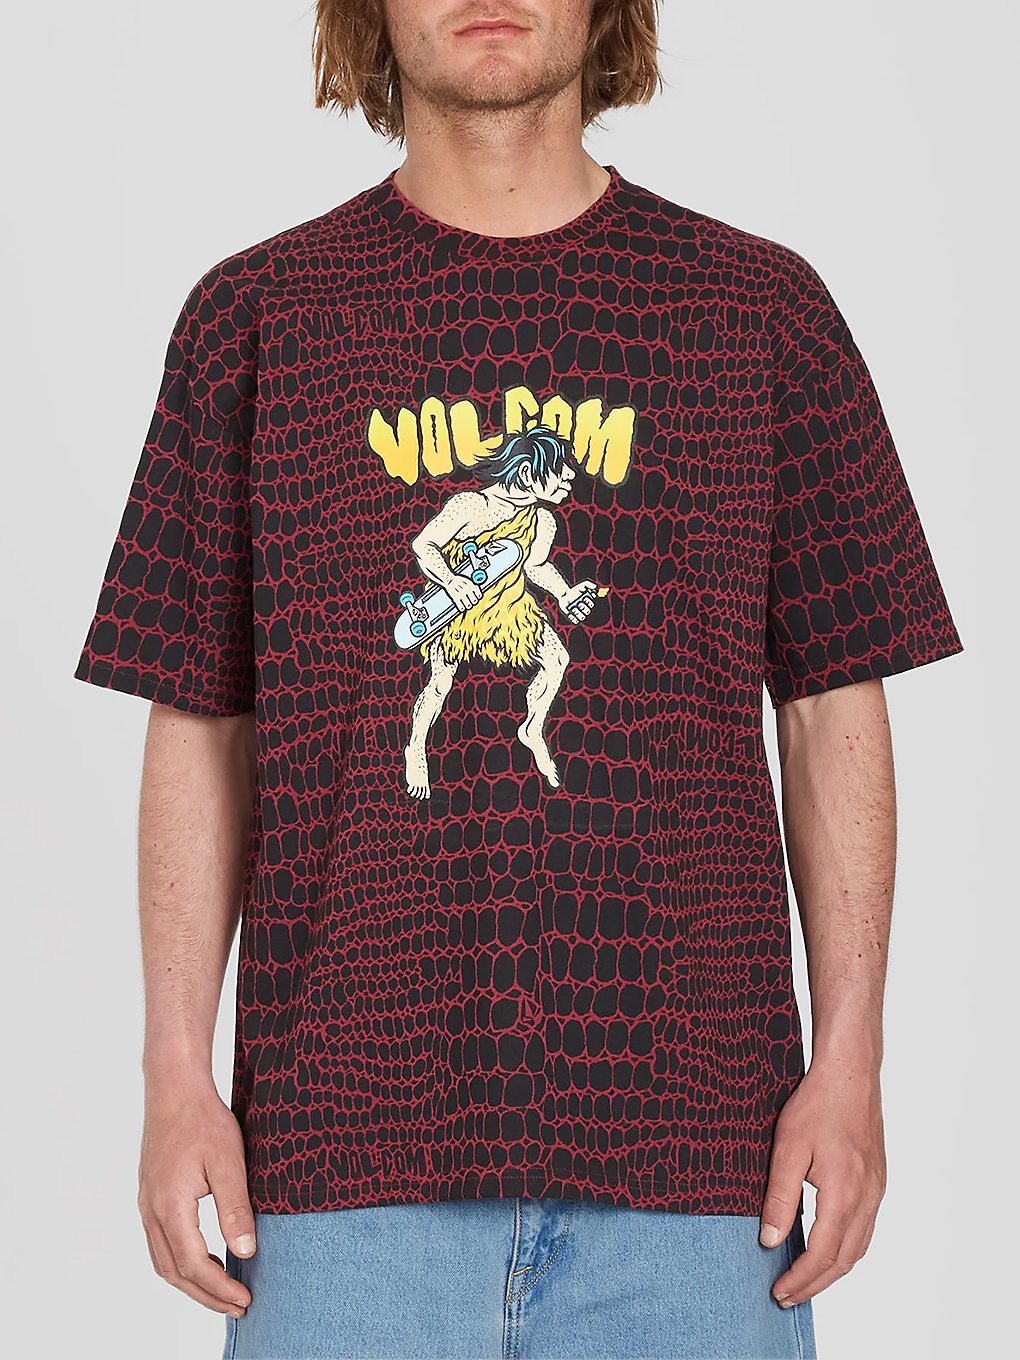 Volcom Fa Todd Bratrud T-Shirt print kaufen